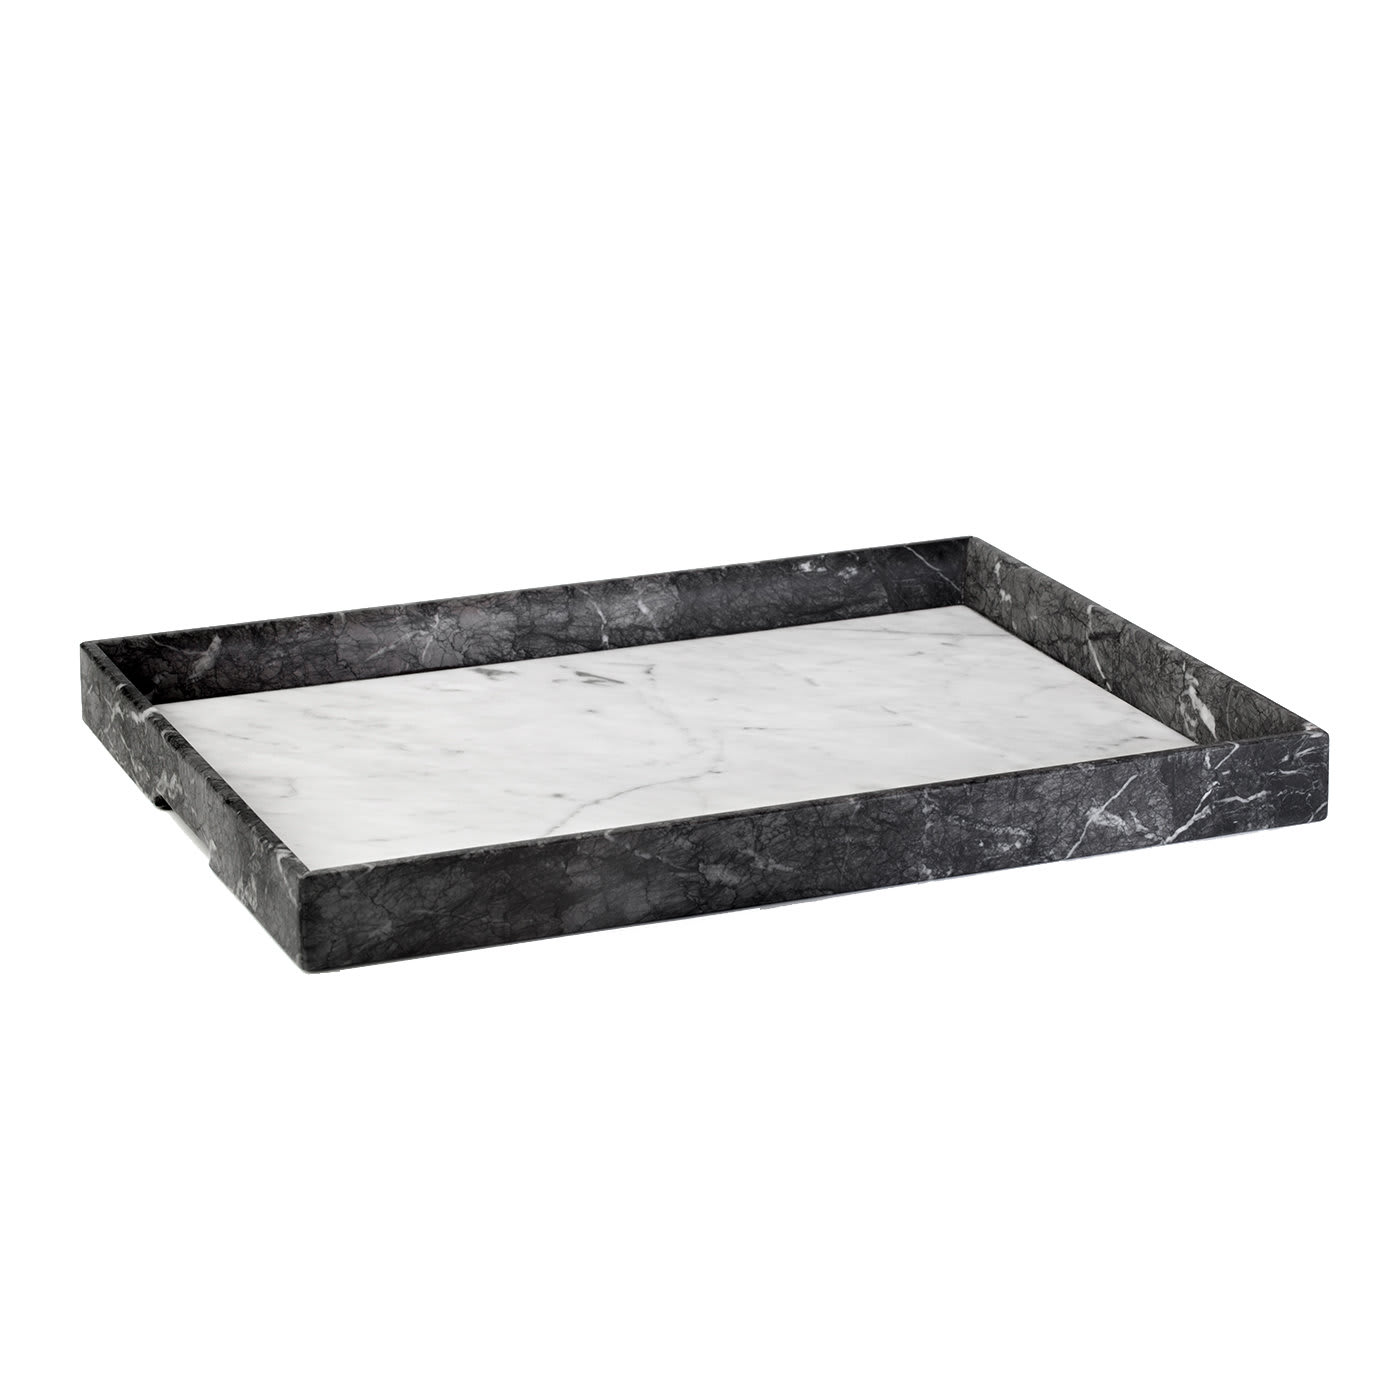 Convivio Maxi Solid Tray in Grey Carnico and White Carrara Marbles - Espidesign by Paola Speranza